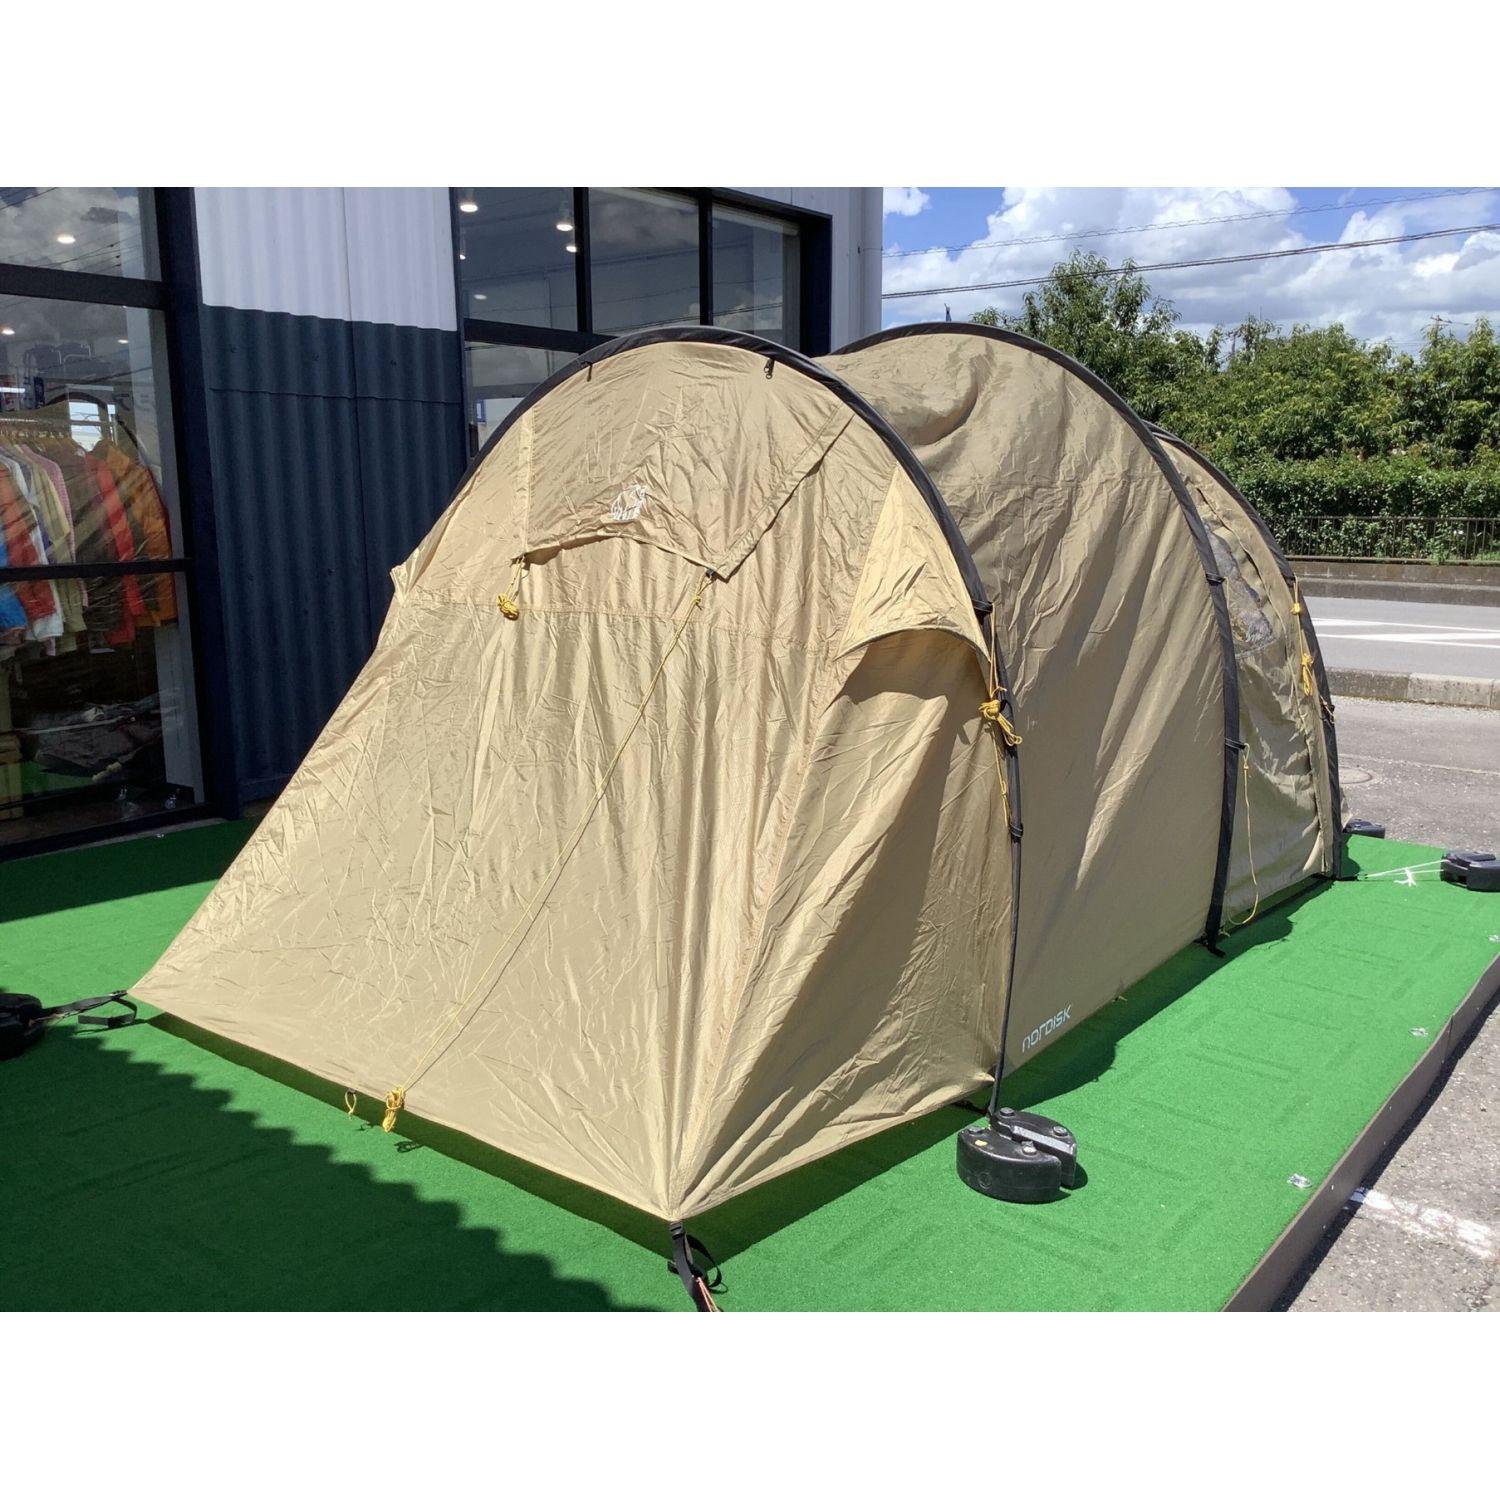 ノルディスク テント Reisa 4 PU 別売りフロアシート付 防災 対策